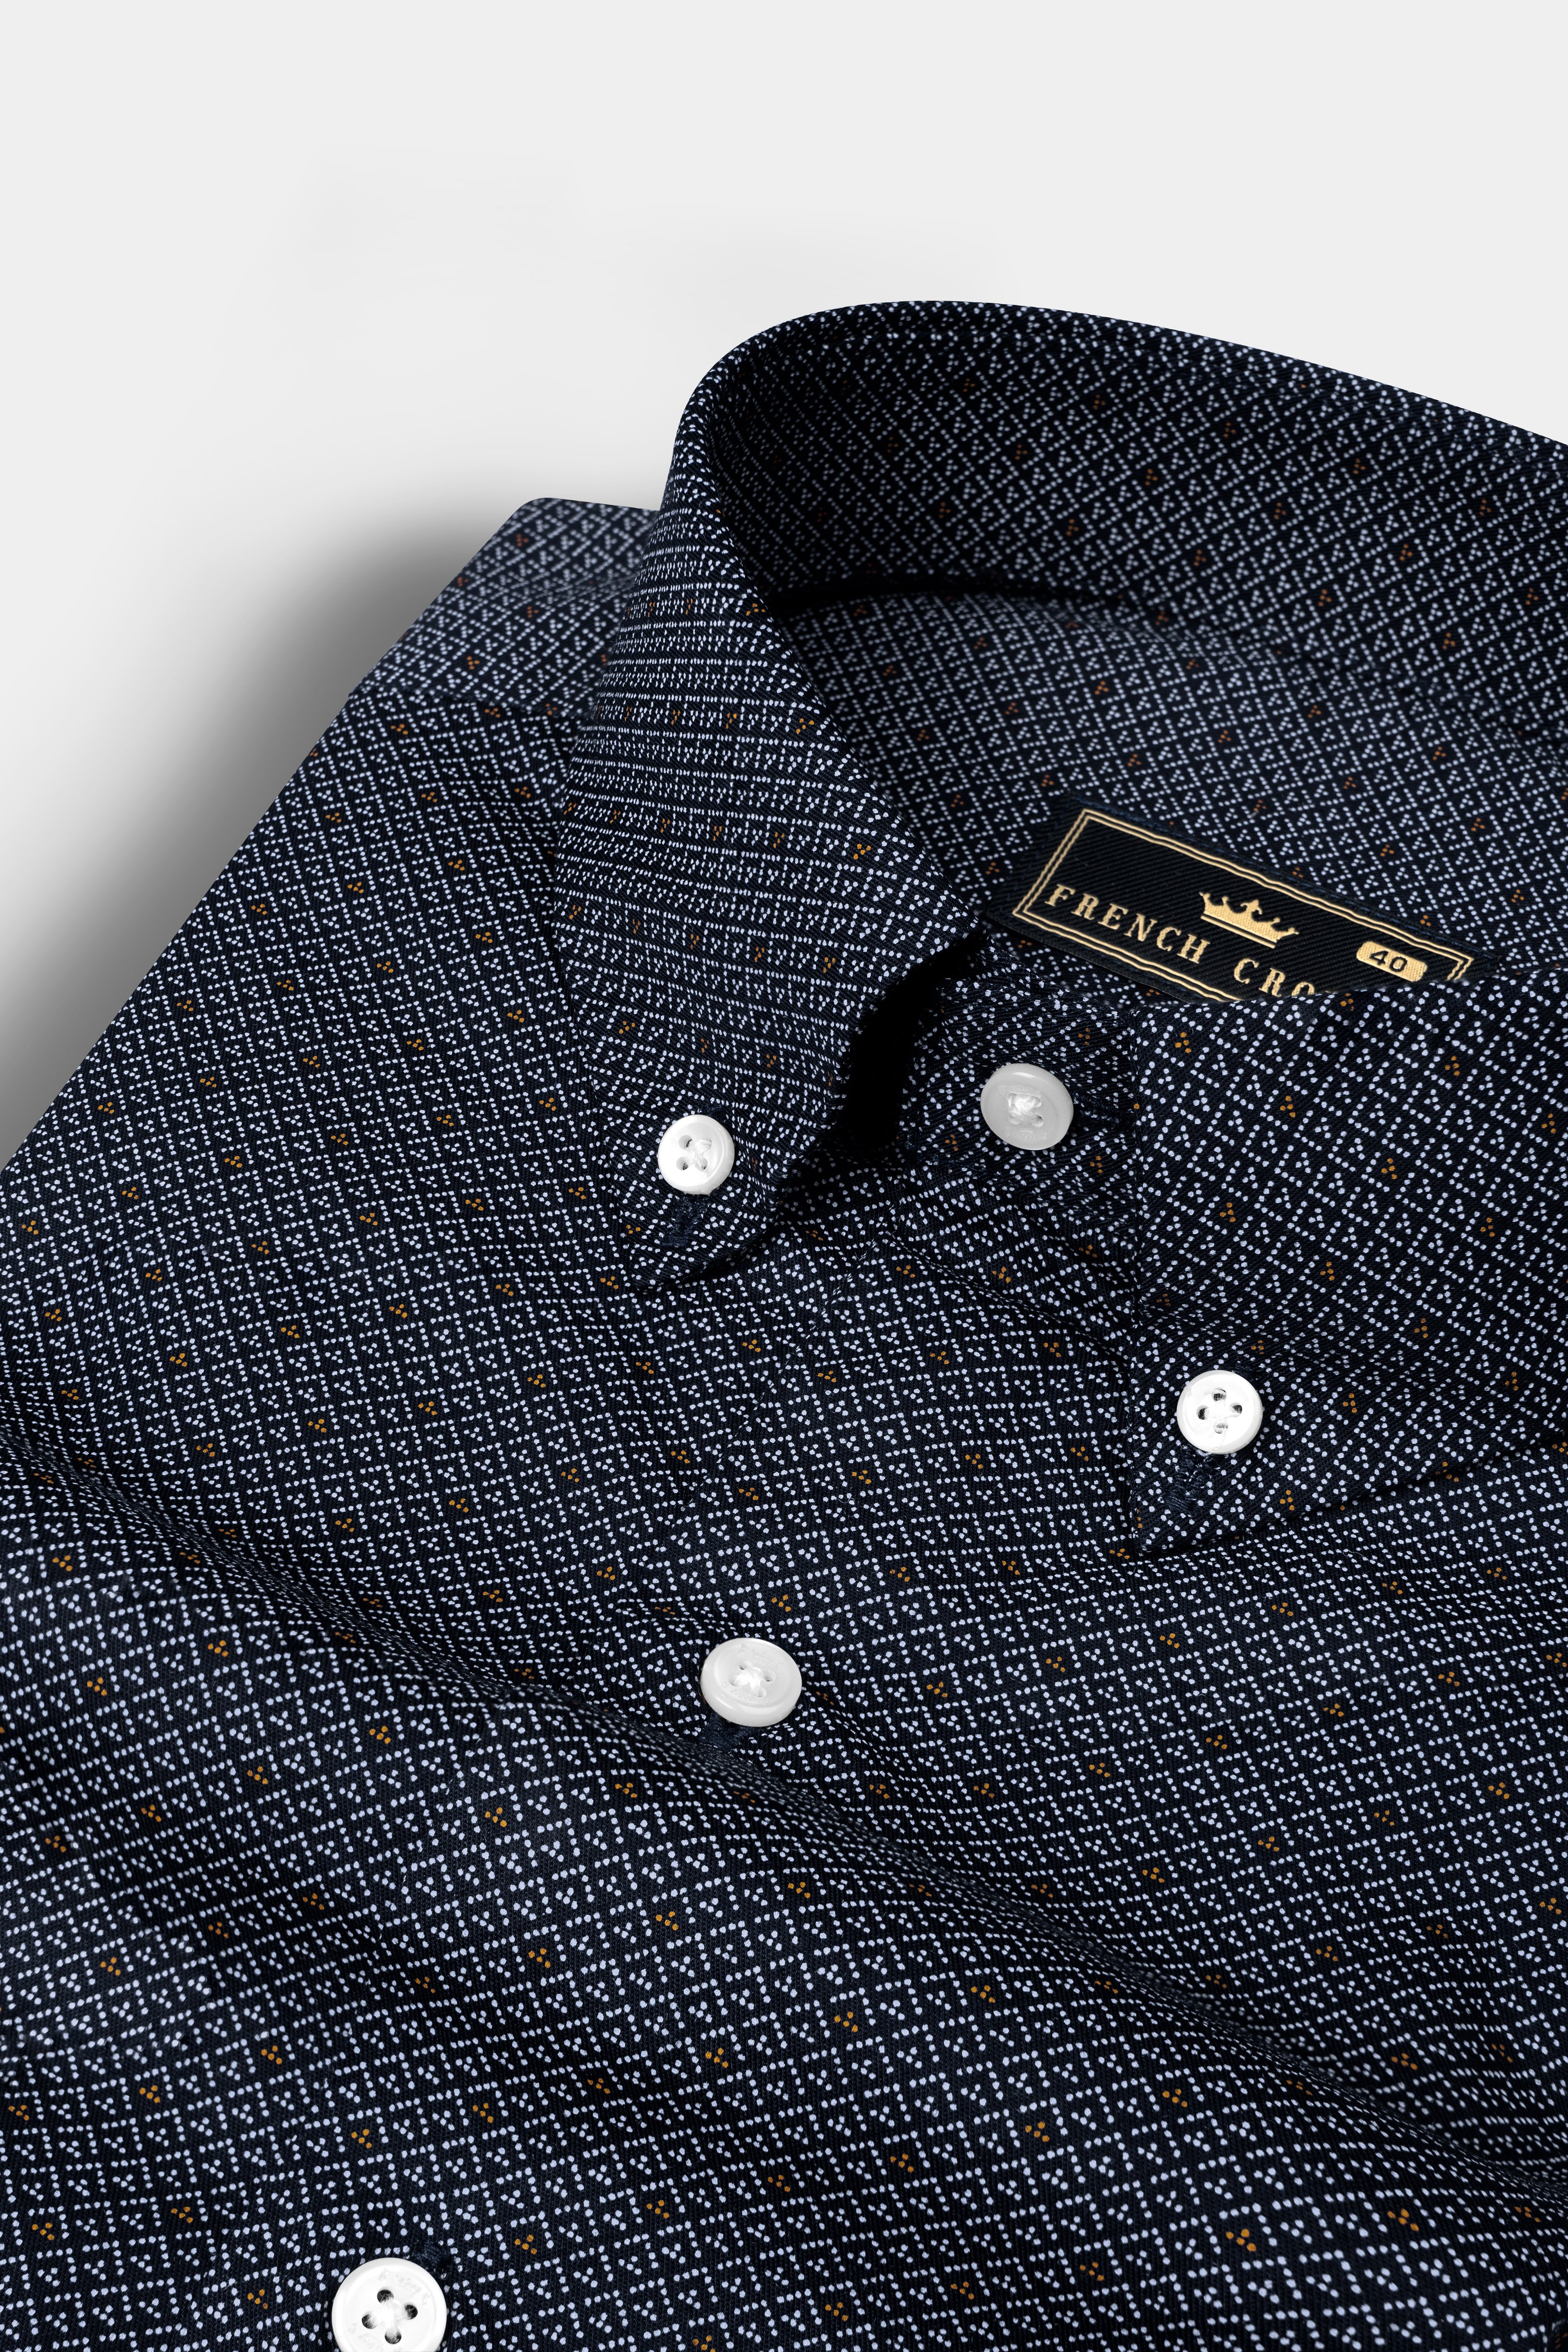 Mirage Blue Textured Twill Cotton Shirt